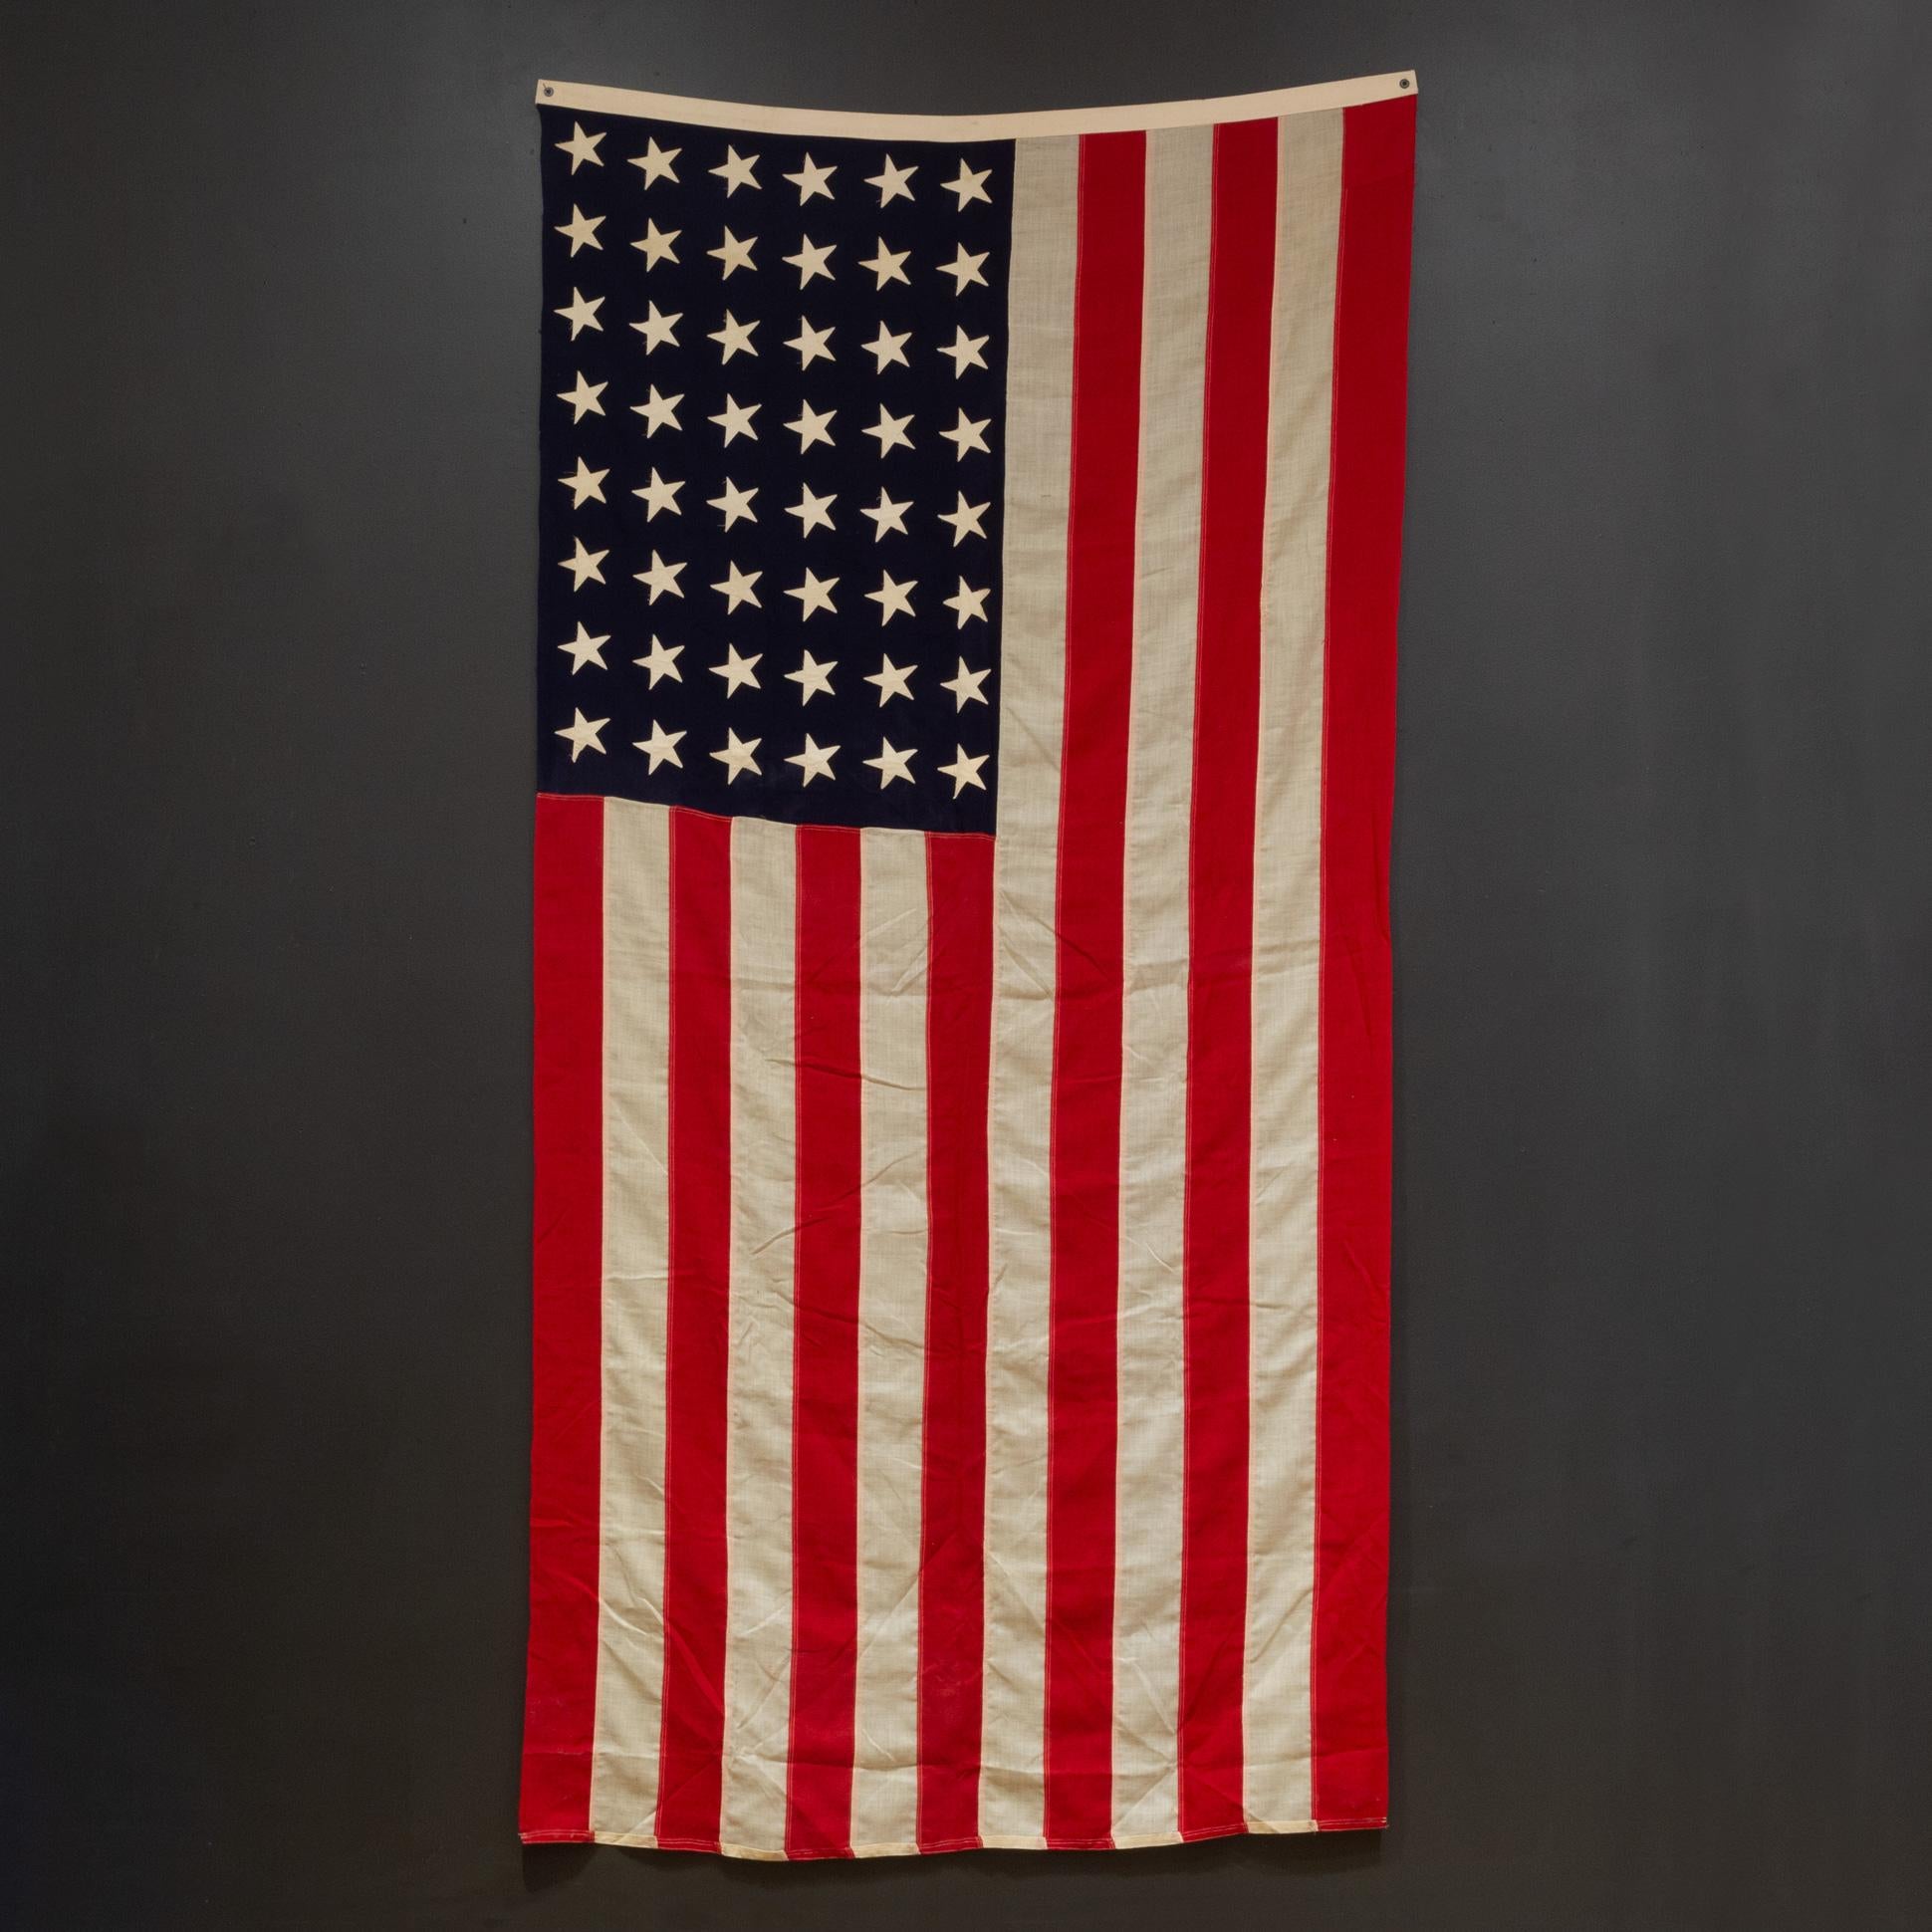 Industriel Grand drapeau américain en laine avec 48 étoiles, vers 1940-1950, expédition gratuite en vente